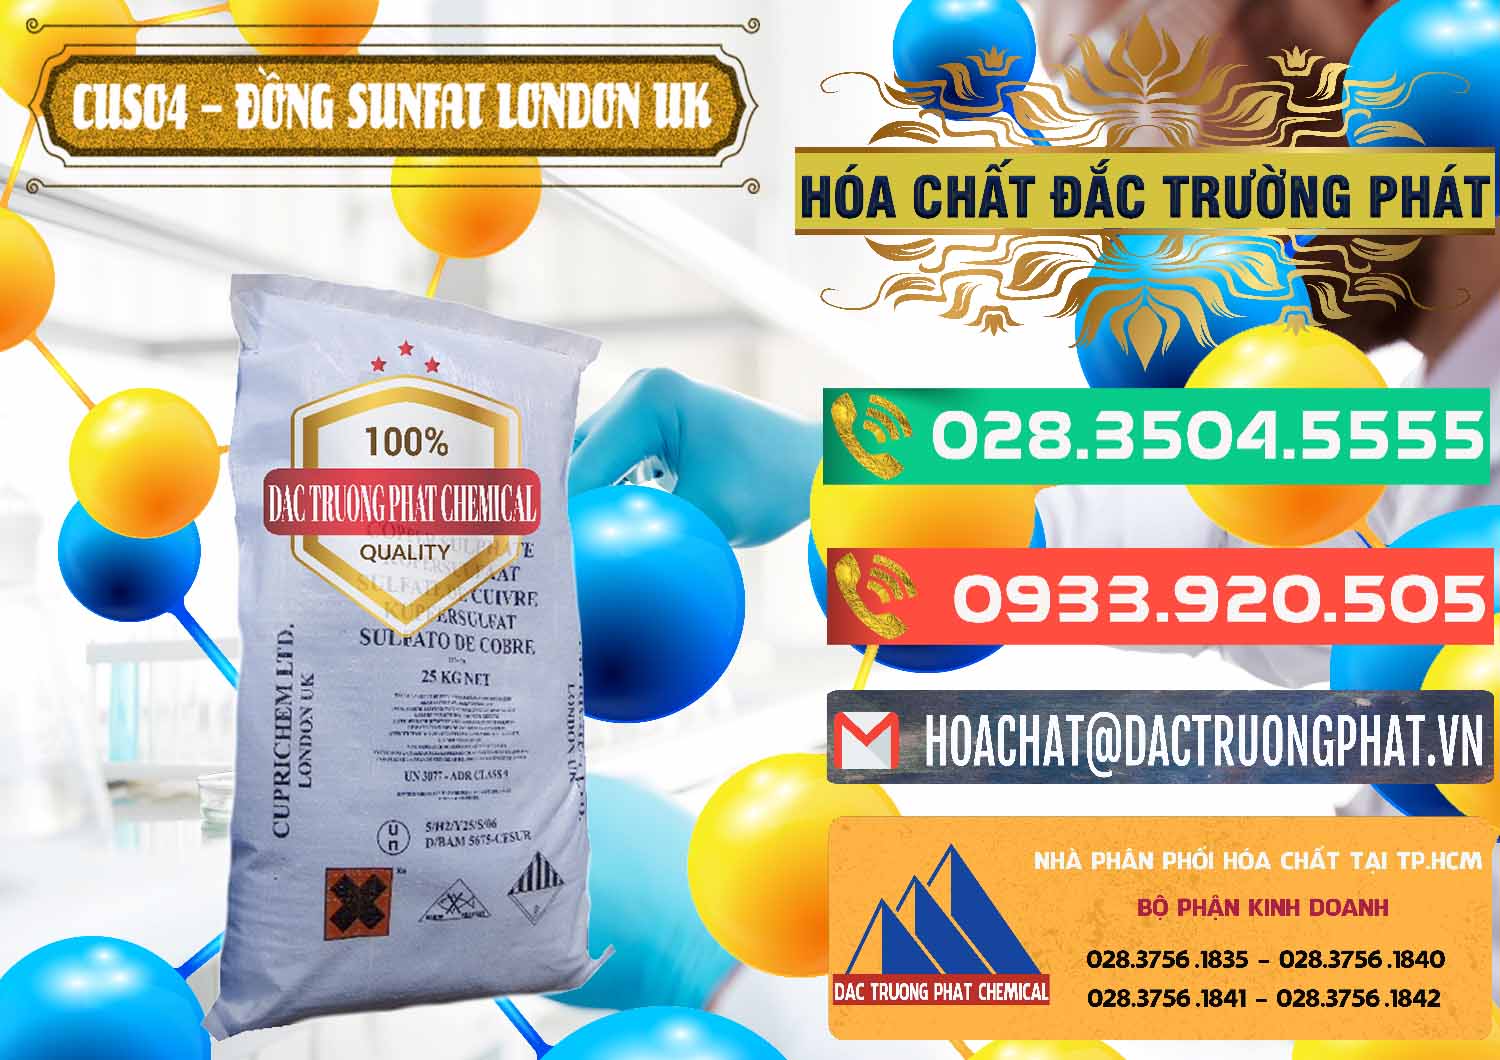 Chuyên kinh doanh và bán CuSO4 – Đồng Sunfat Anh Uk Kingdoms - 0478 - Cty kinh doanh - phân phối hóa chất tại TP.HCM - congtyhoachat.com.vn